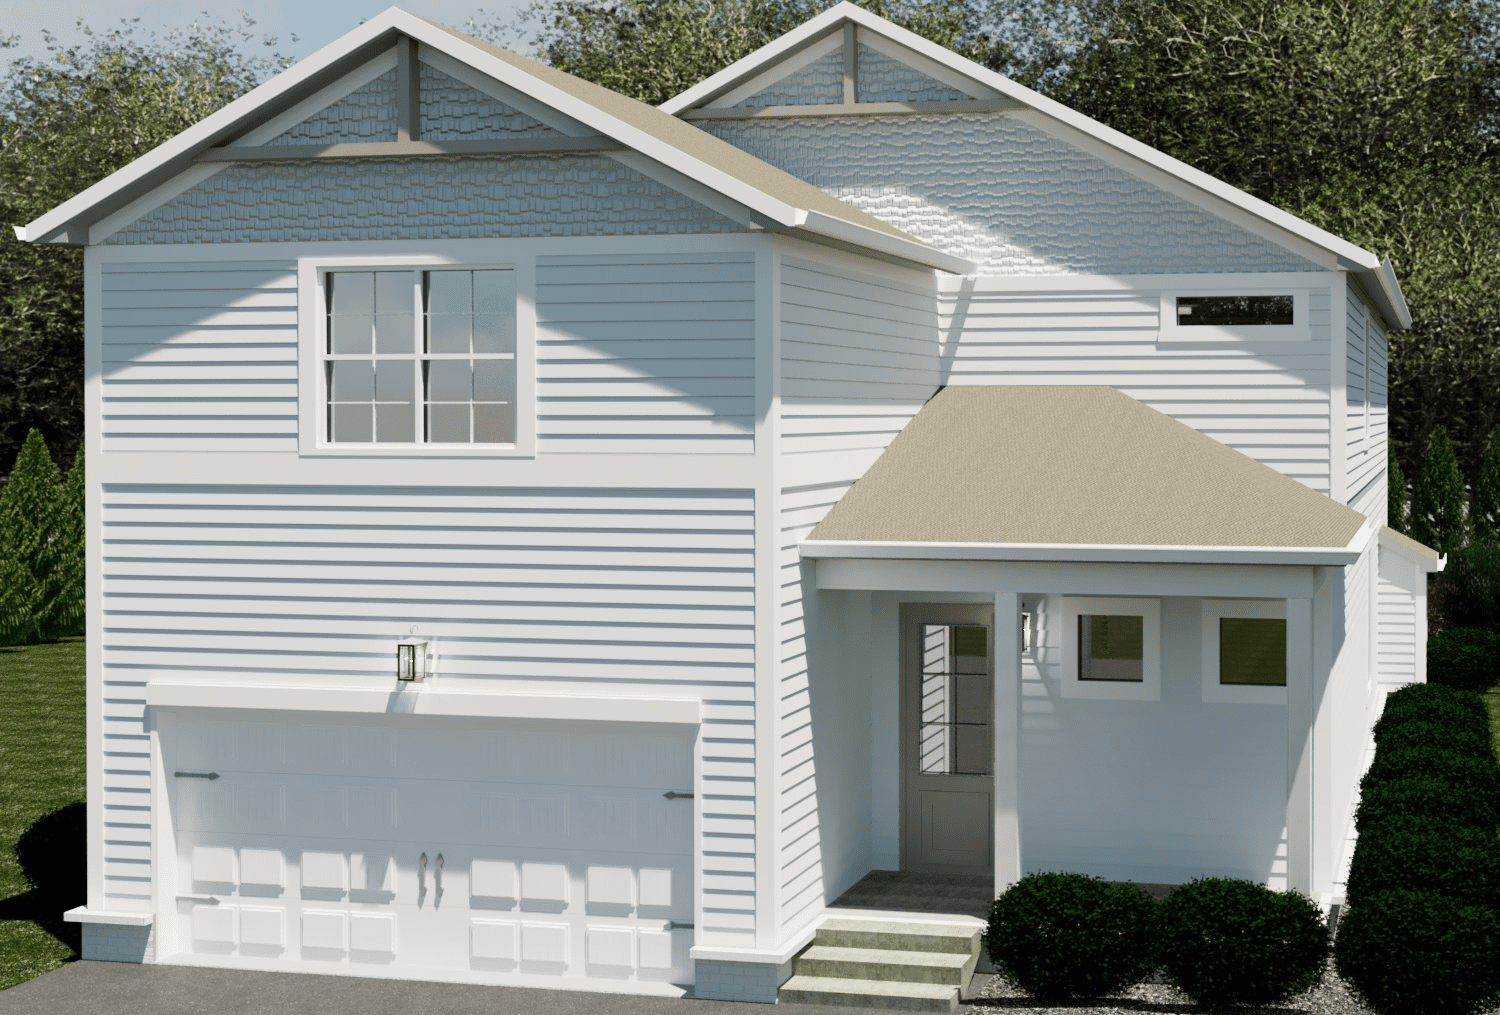 White luxury home - New Home Communities in Murfreesboro TN